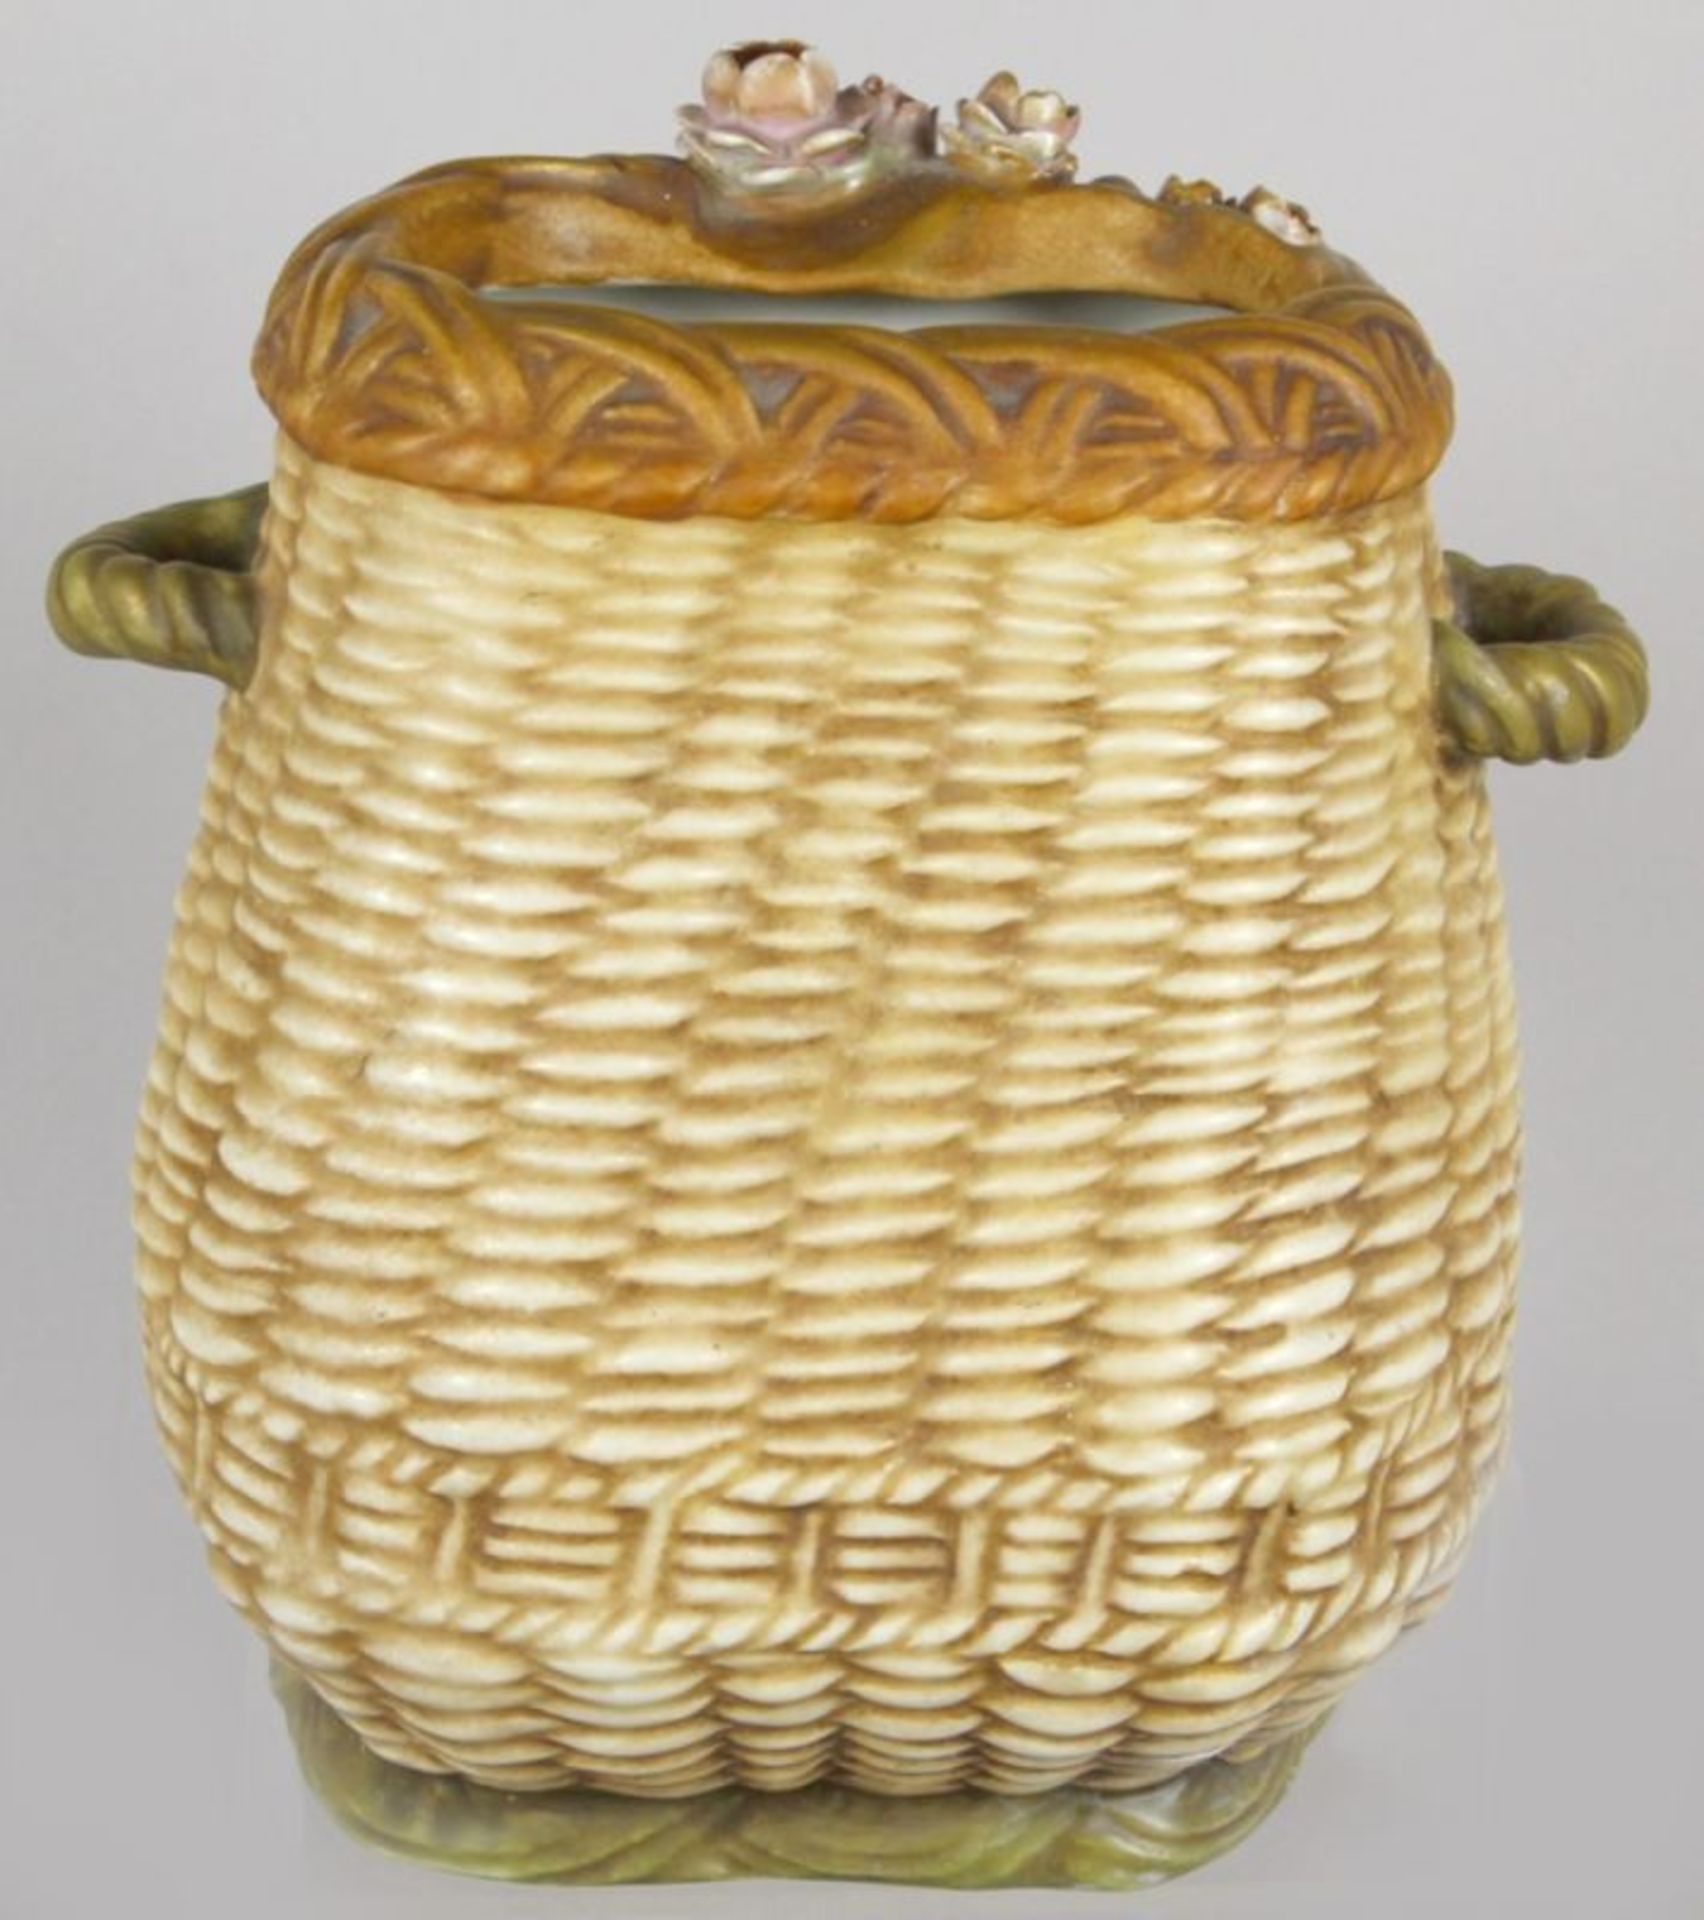 Keramik-Ziervase, "Amor mit Rosen", Amphora-Werke, Riessner, Stellmacher & Kessel, - Bild 3 aus 4